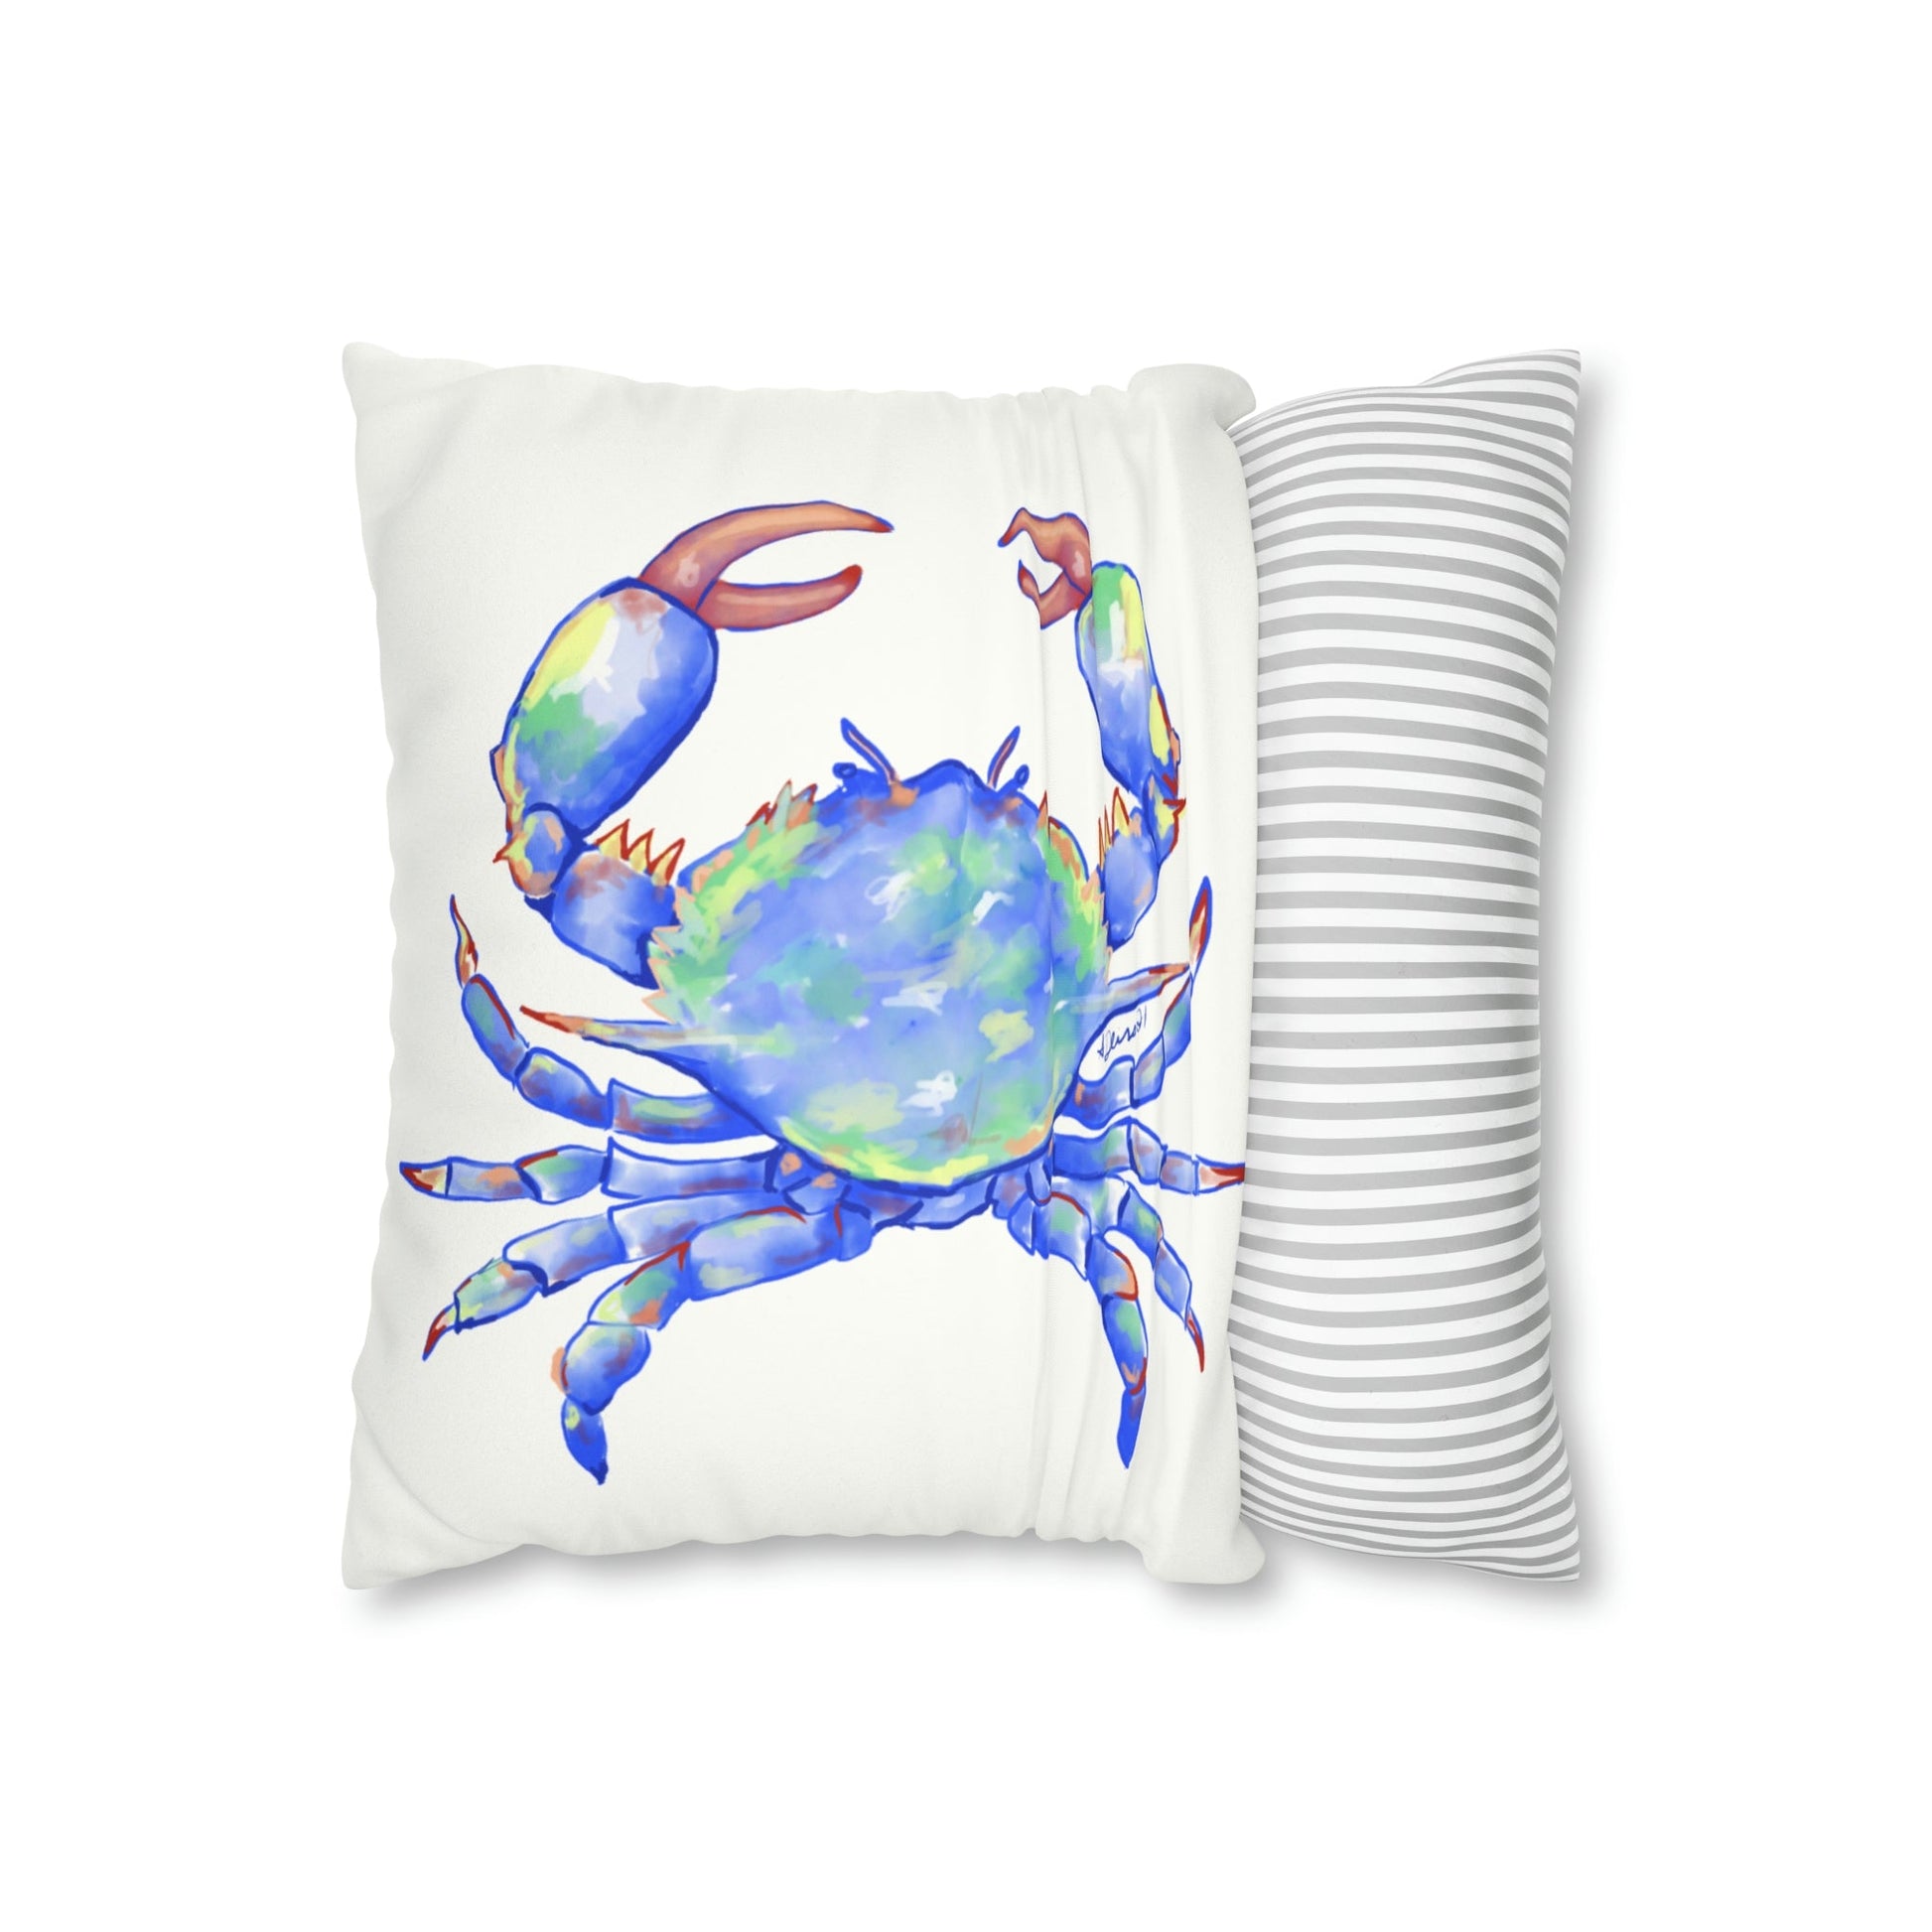 Blue Crab Faux Suede Square Pillow Case - Blue Cava